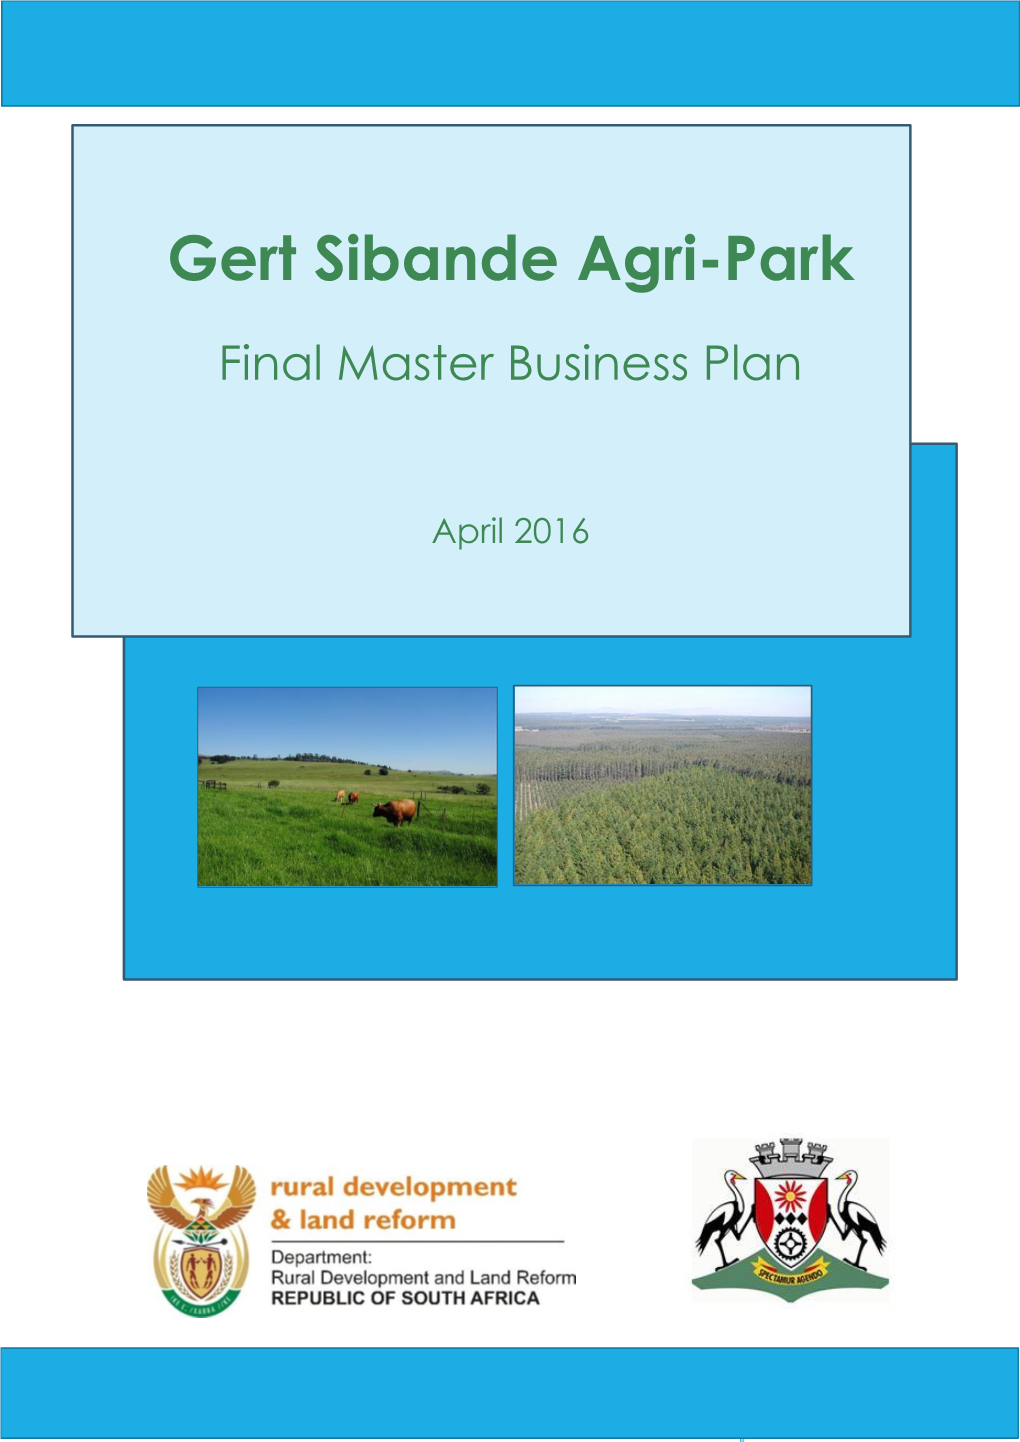 Gert Sibande DM Final Master Agri-Park Business Plan